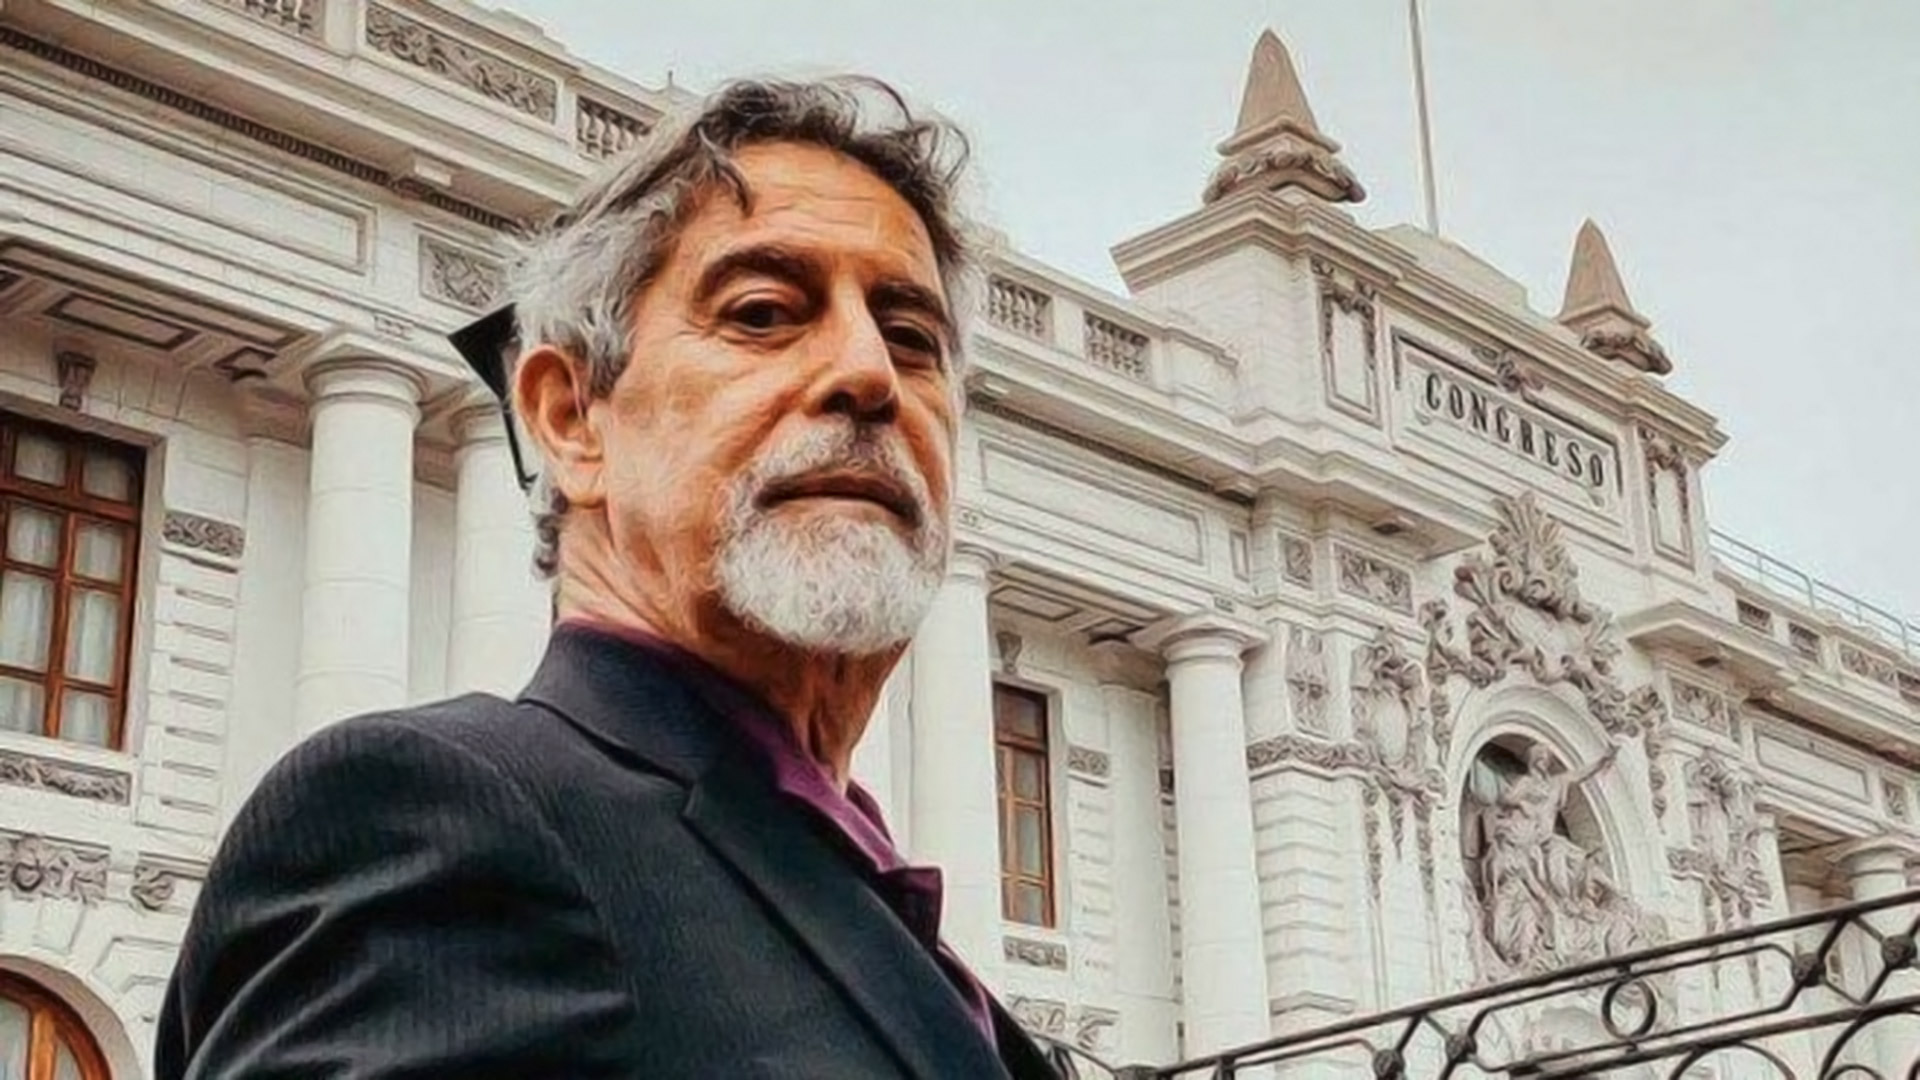 El Congreso de Perú designó a Francisco Sagasti como el nuevo presidente interino del país